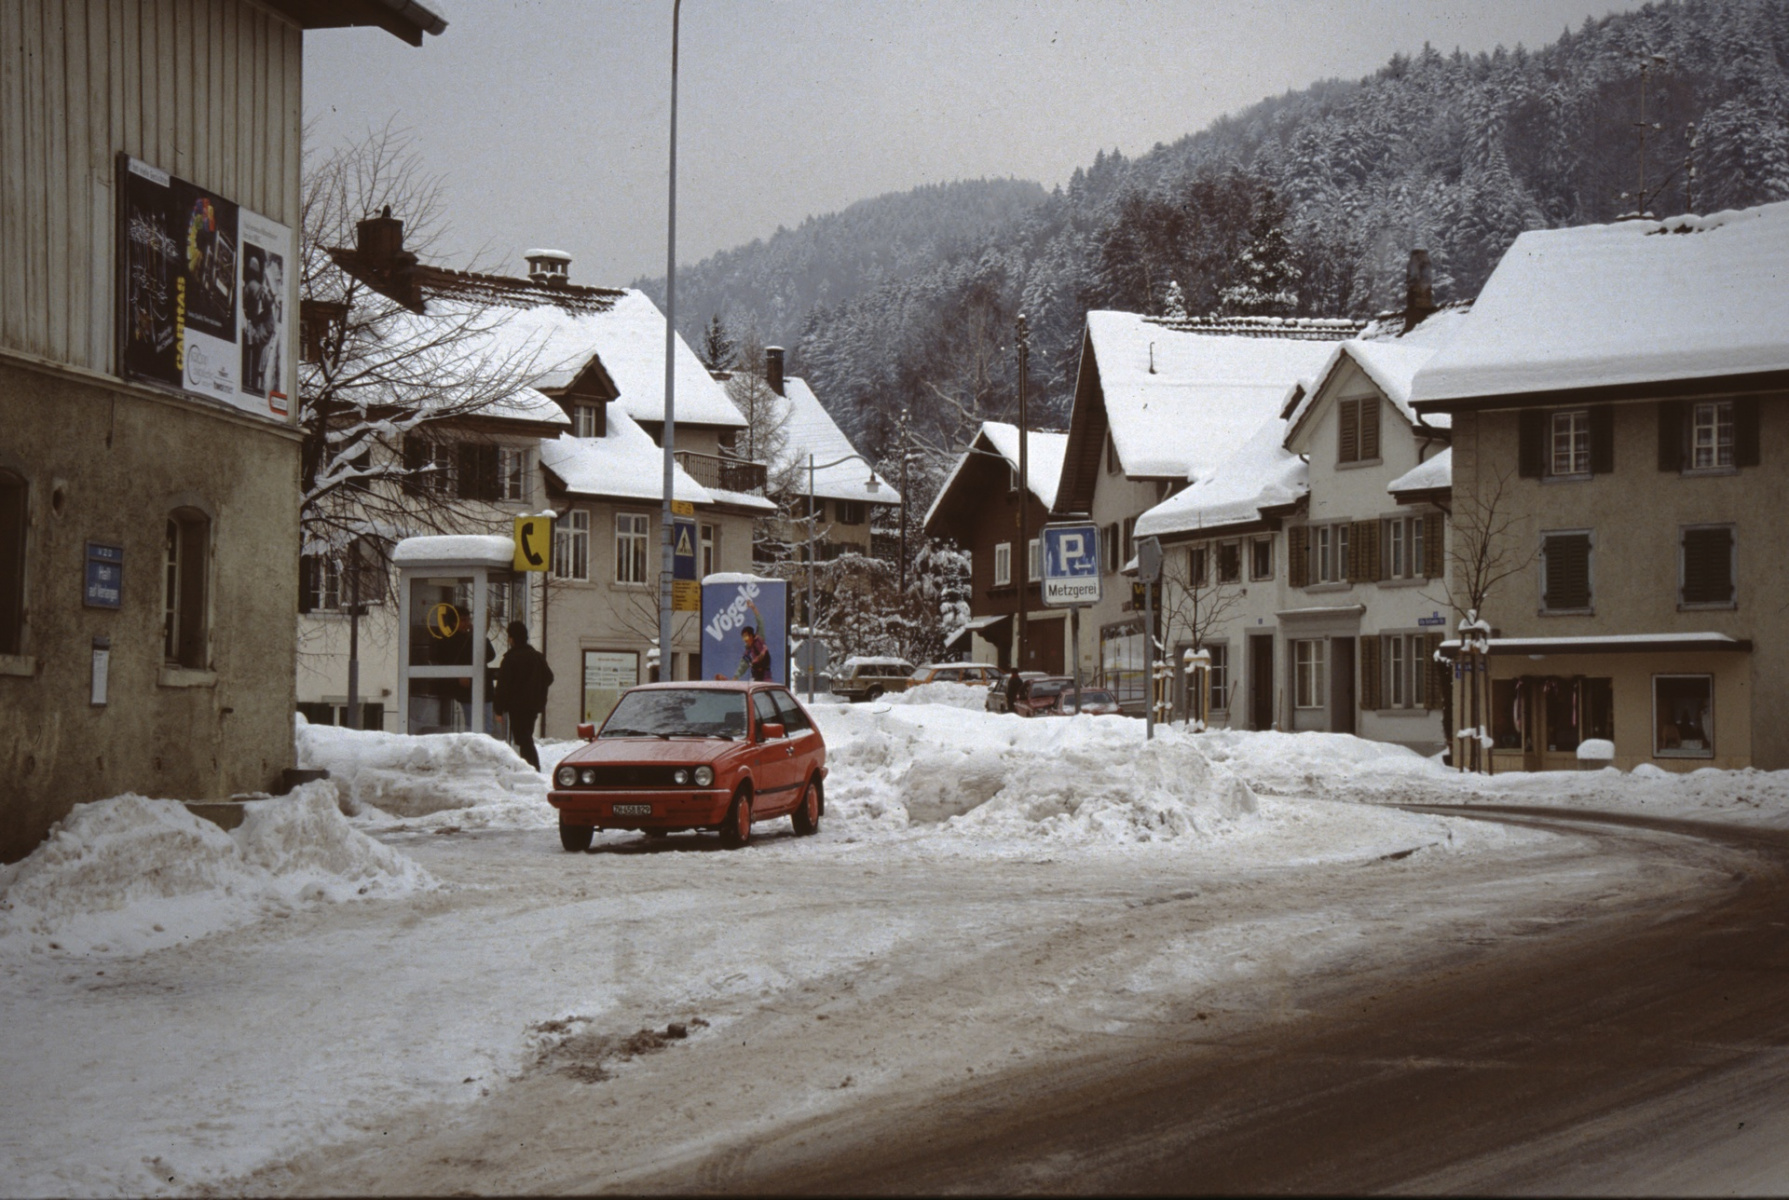 Dorfplatz, Beginn der Bahnhofstrasse (Winter)